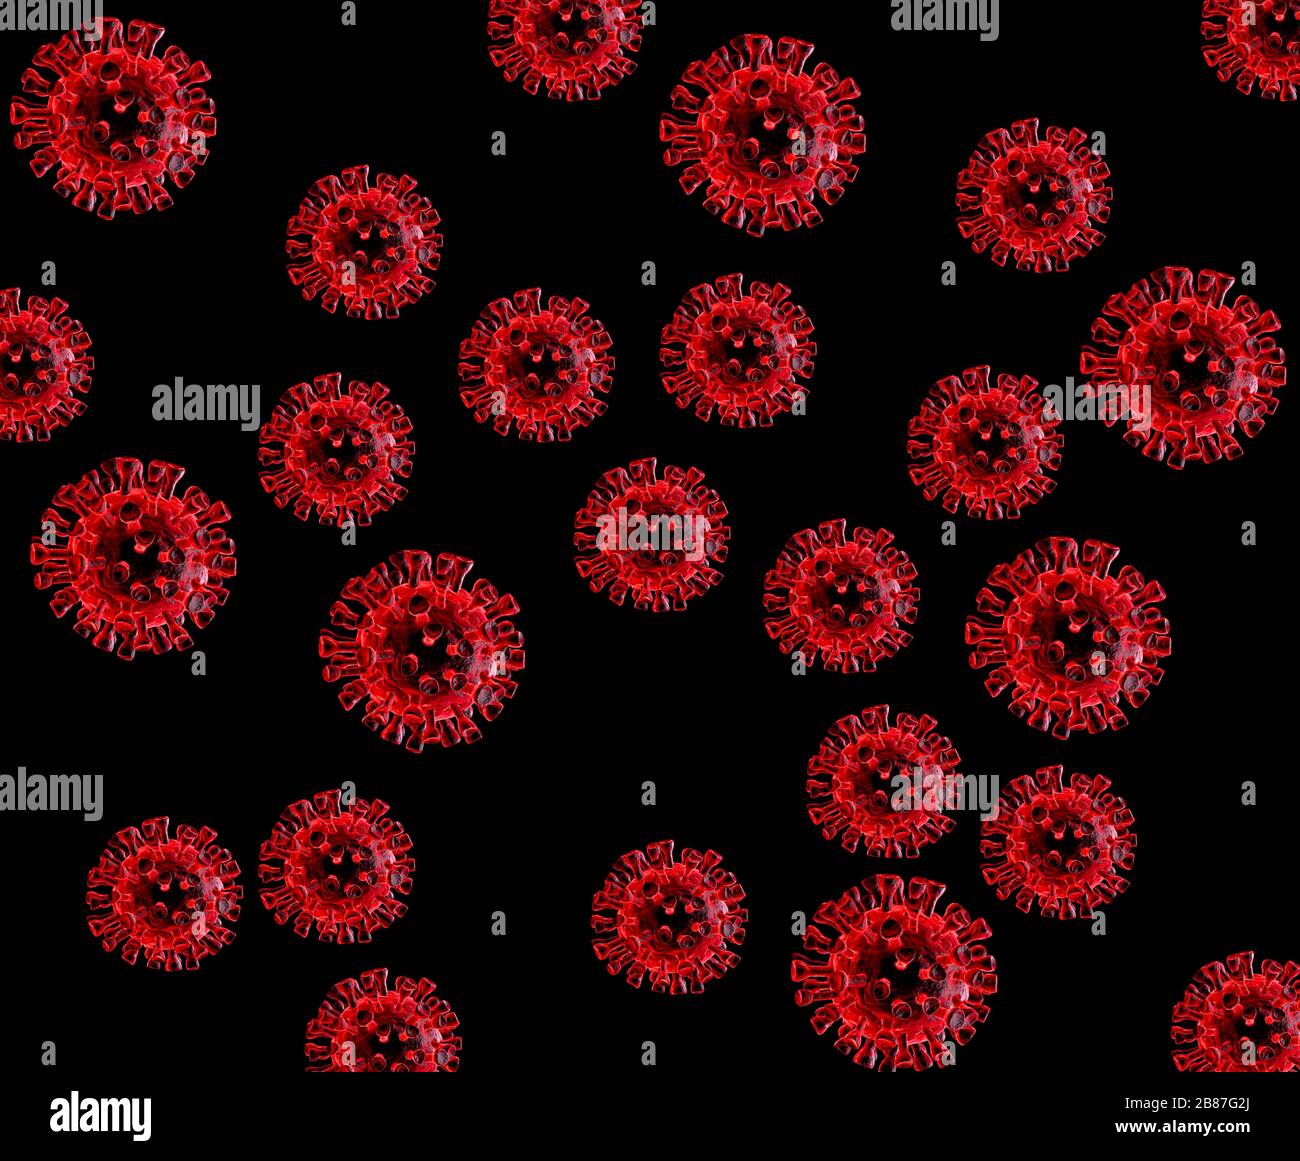 Particelle di coronavirus generate digitali che mostrano picchi che formano una corona come la corona solare Foto Stock